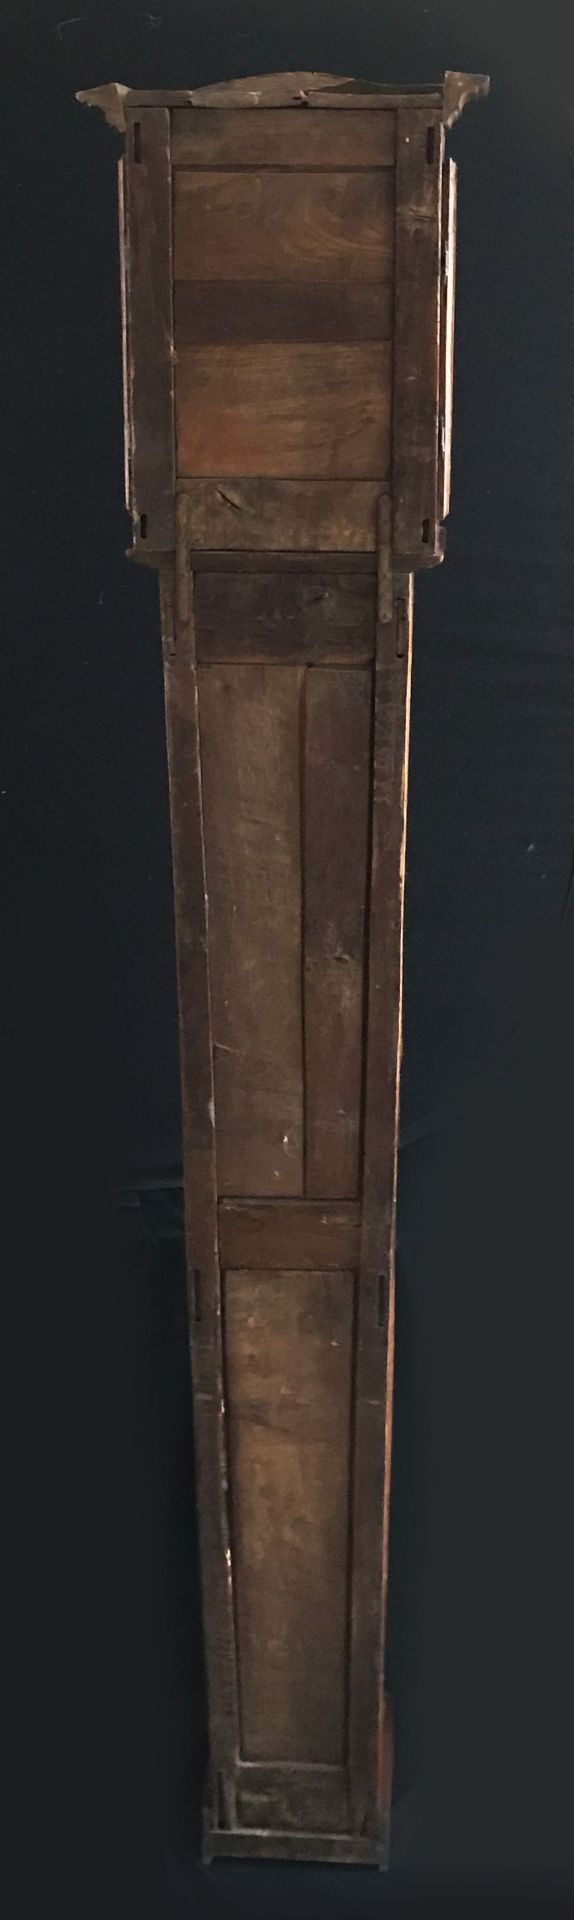 Standuhr, um 1800, in Holzgehäuse, das sich nach unten leicht verjüngt, einfaches Uhrwerk mit - Image 7 of 8